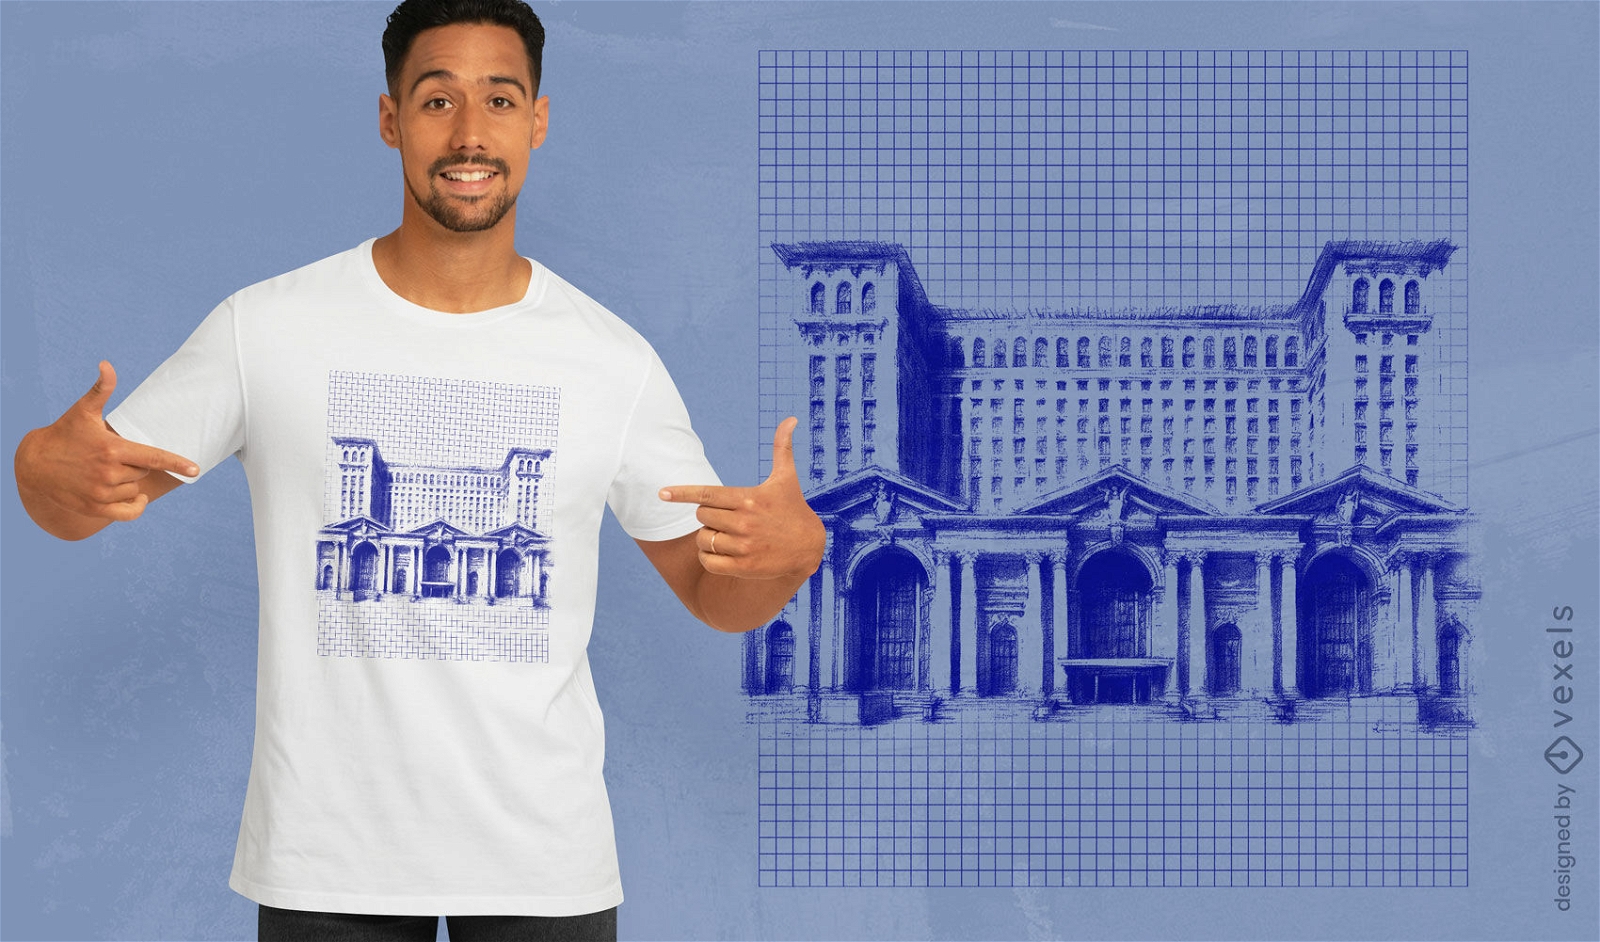 Diseño de camiseta con plano de la estación de tren de Detroit.